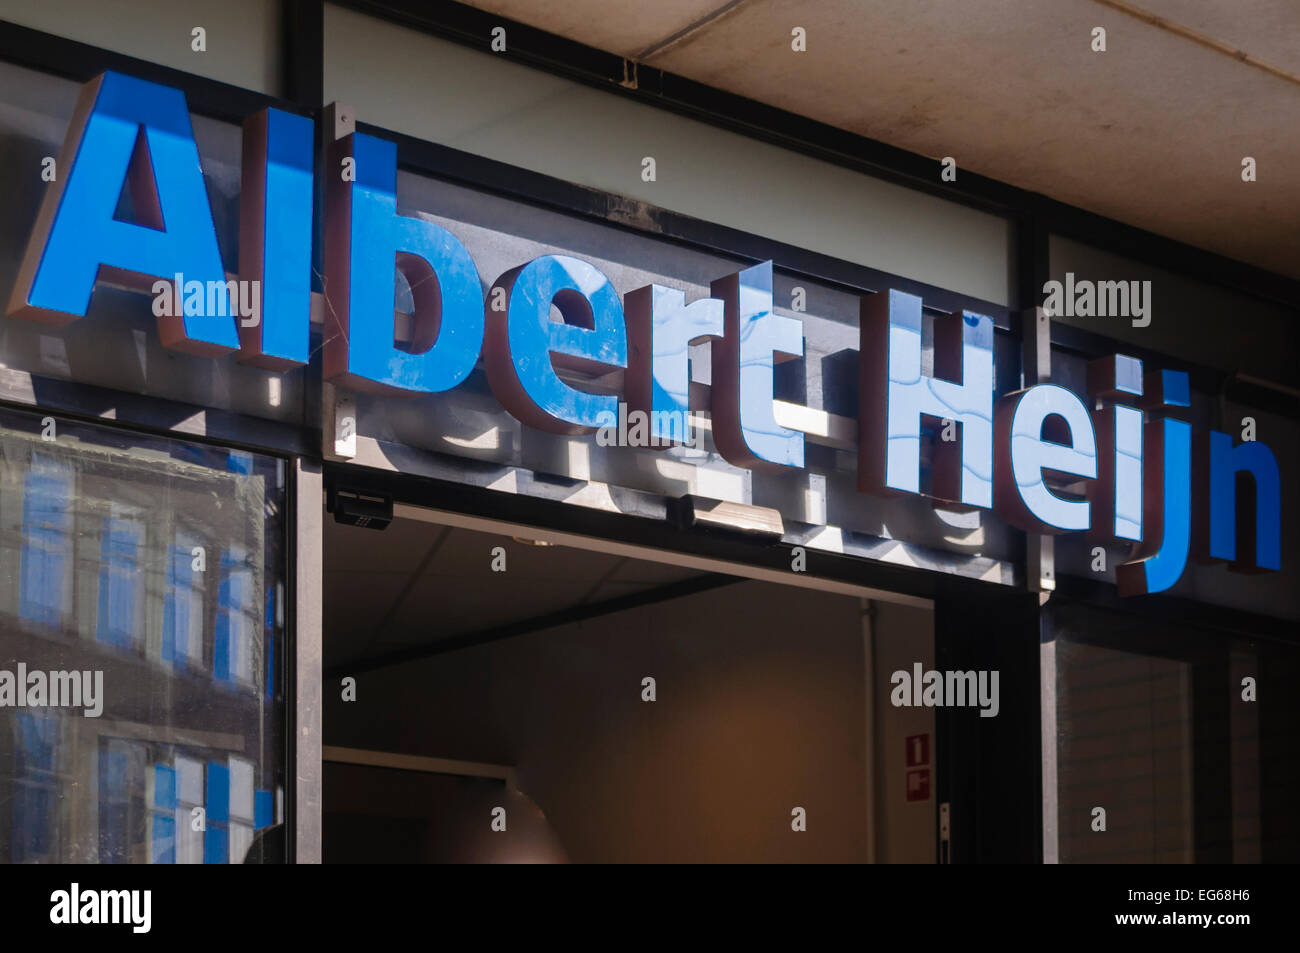 Albert Heijn supermarket, The Hague Stock Photo